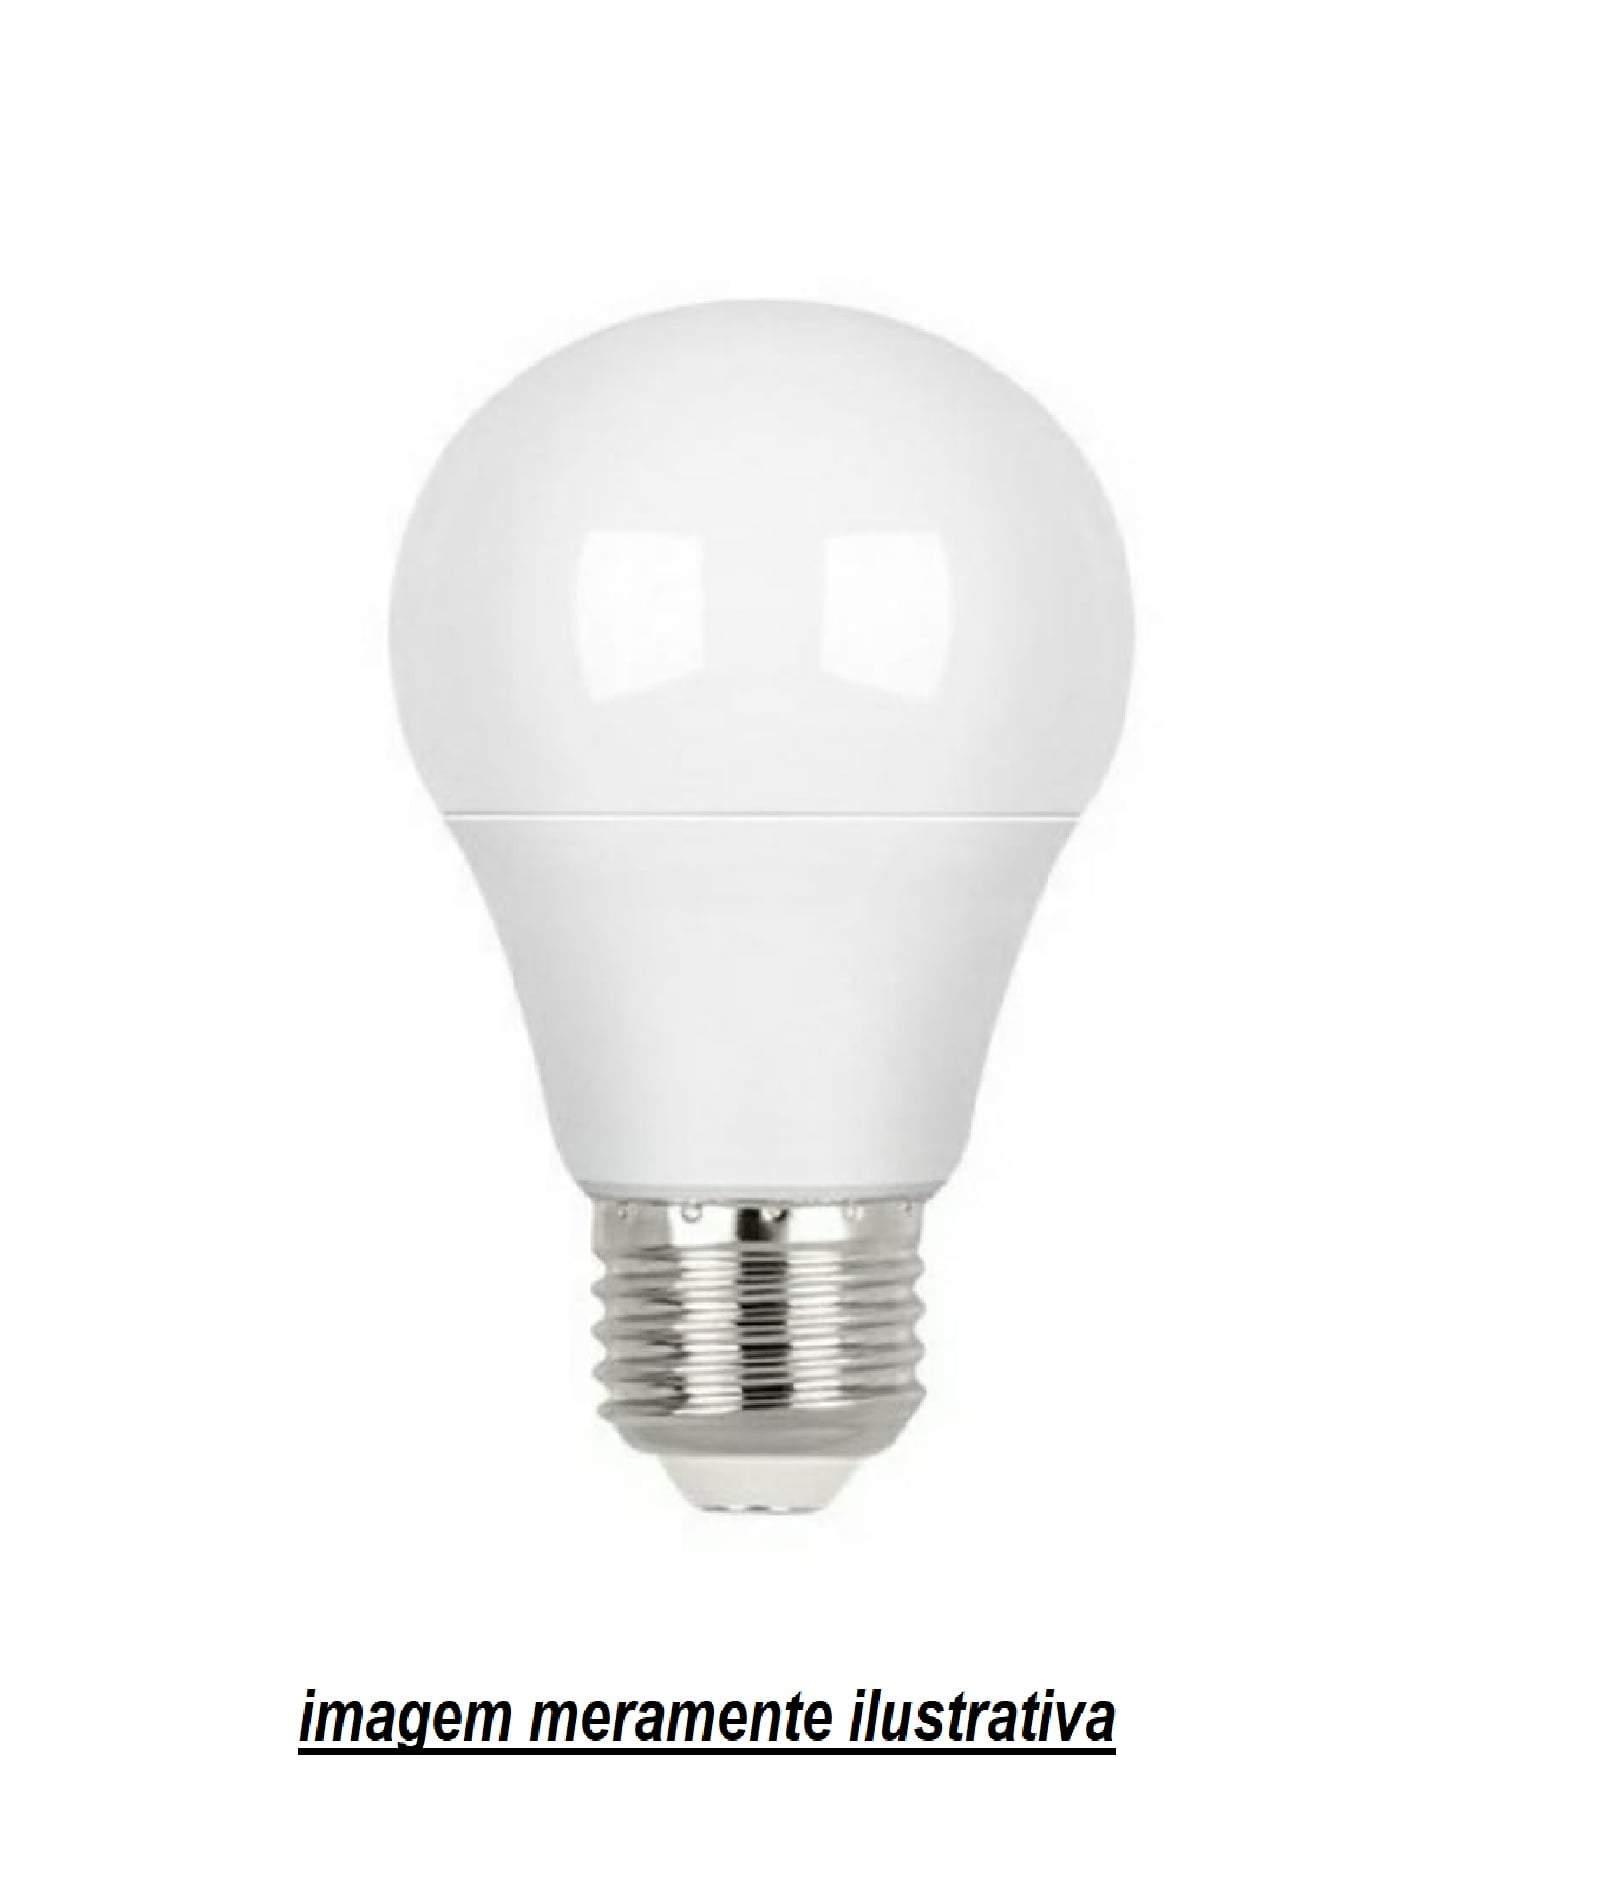 200 unidades  de lâmpadas Bulbo Led ( Bolinha ) 3w E27 - 3000k Branco Quente